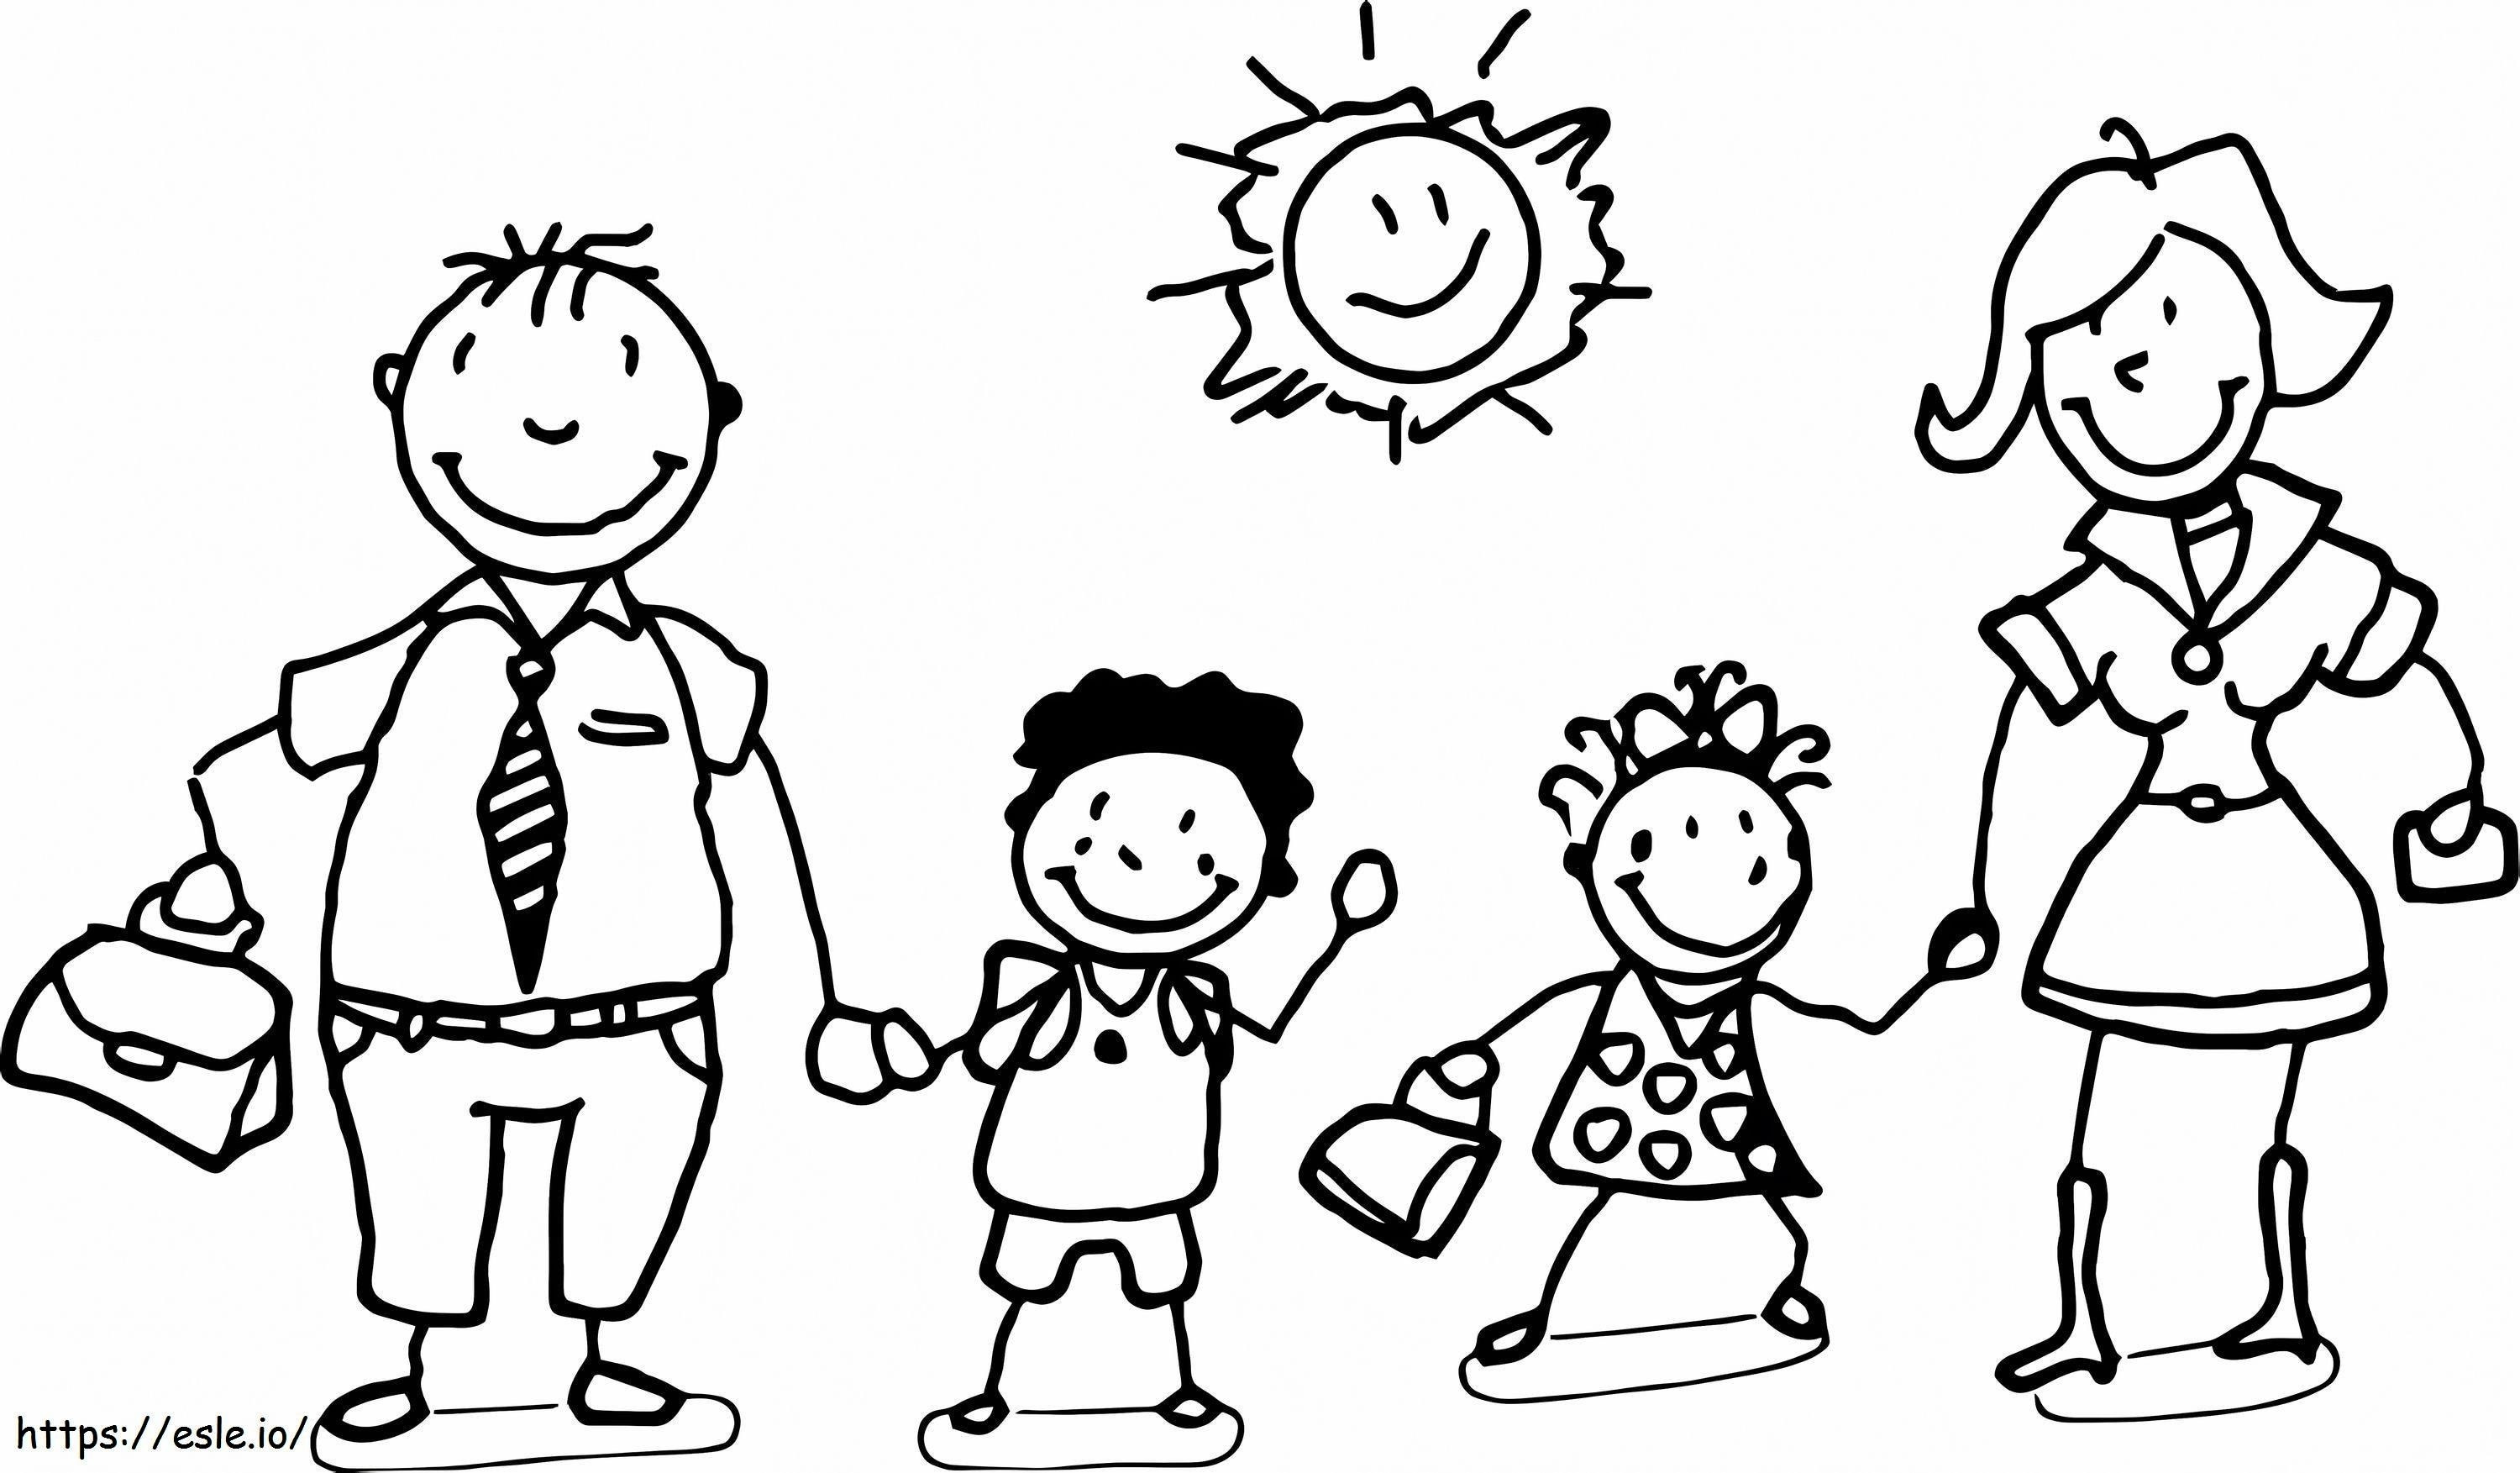 Zeichnungsfamilie mit Sonne ausmalbilder